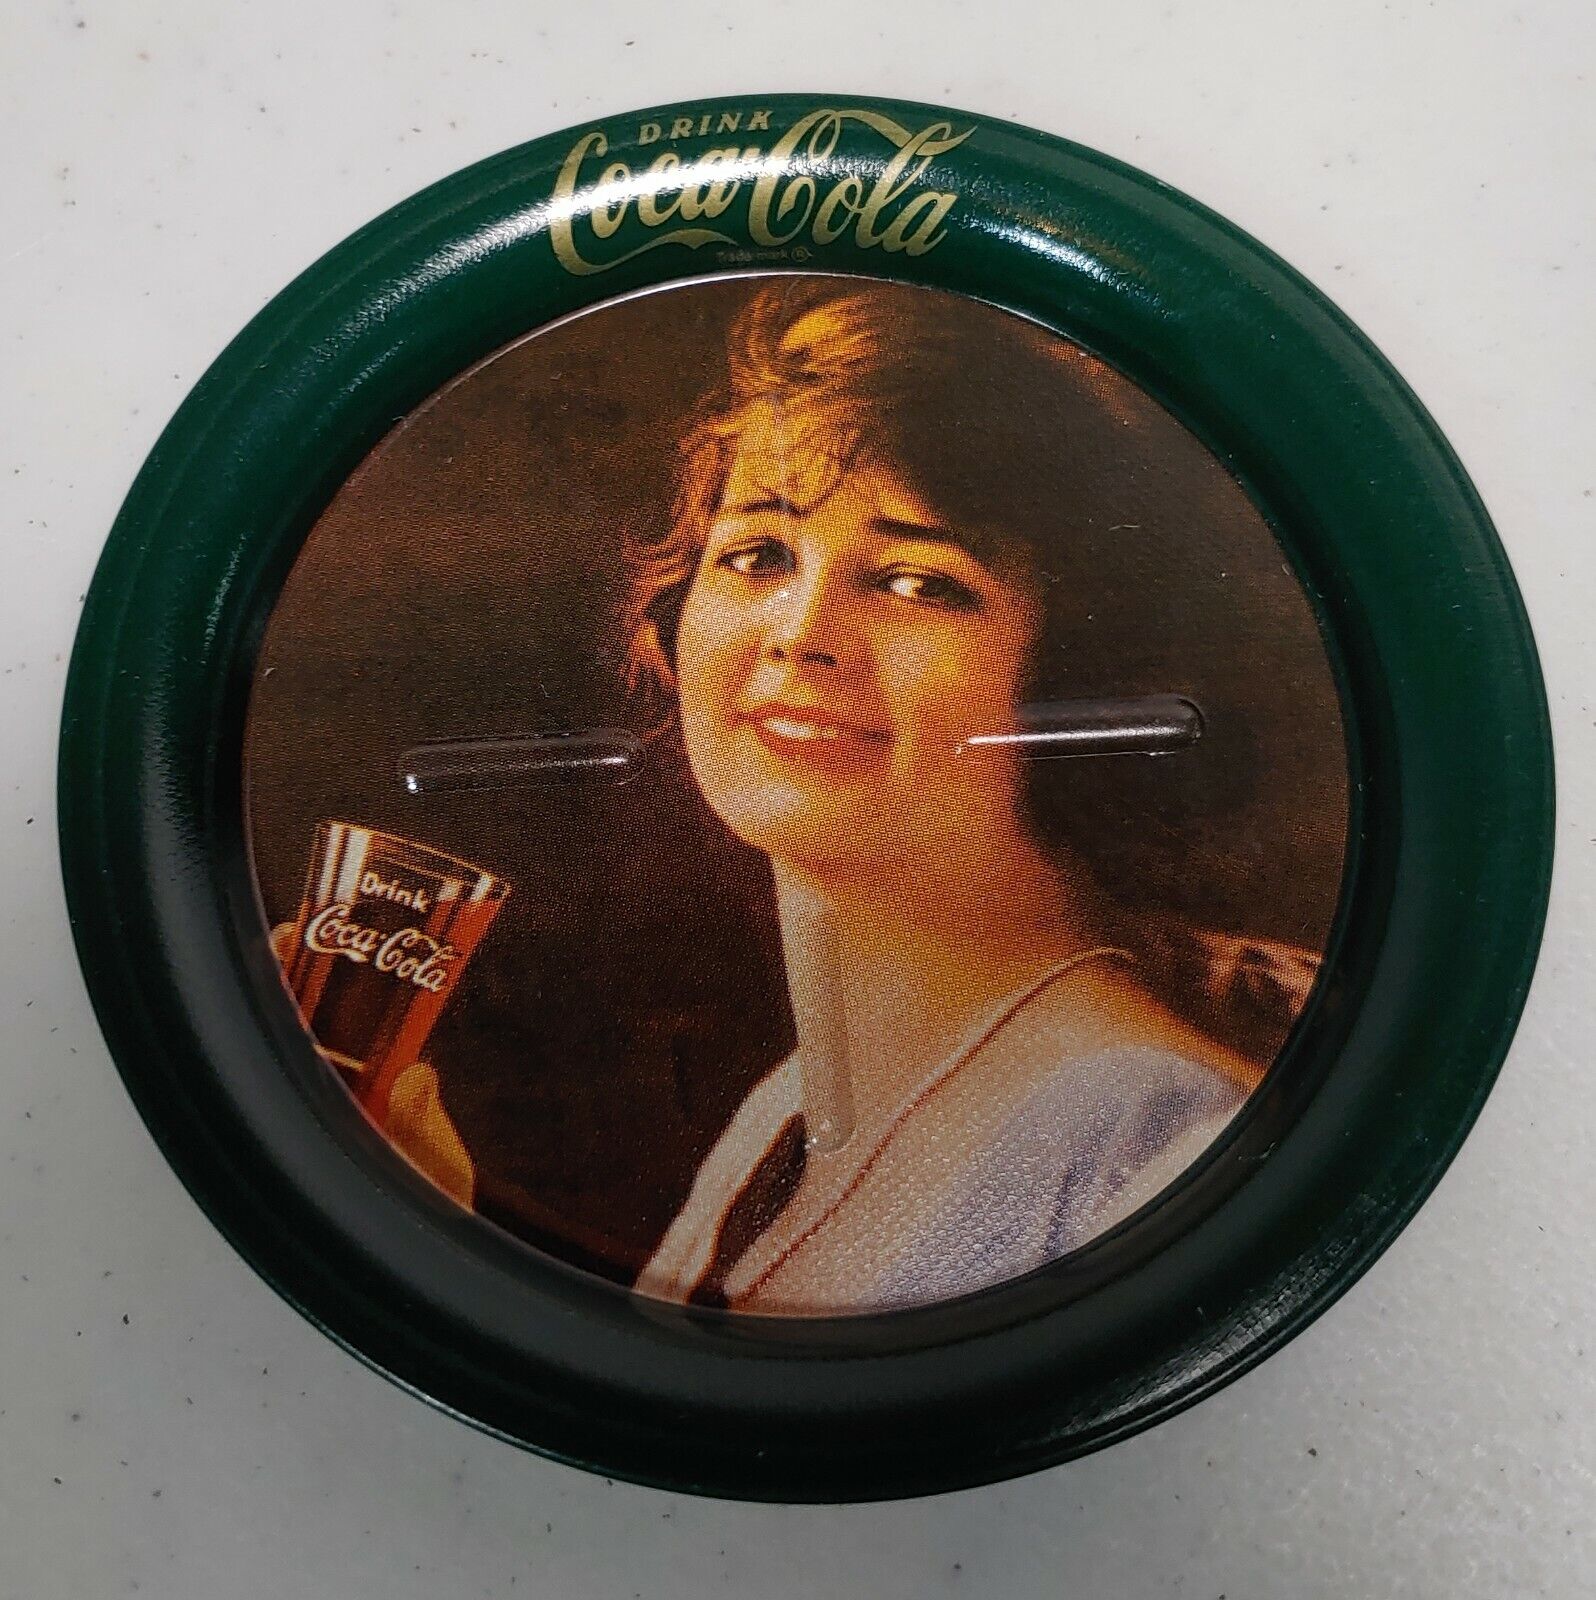 Vtg Coca-cola Mini Circular Tin Tray/coaster - Drink Cola Gibson Girl W/ Glass